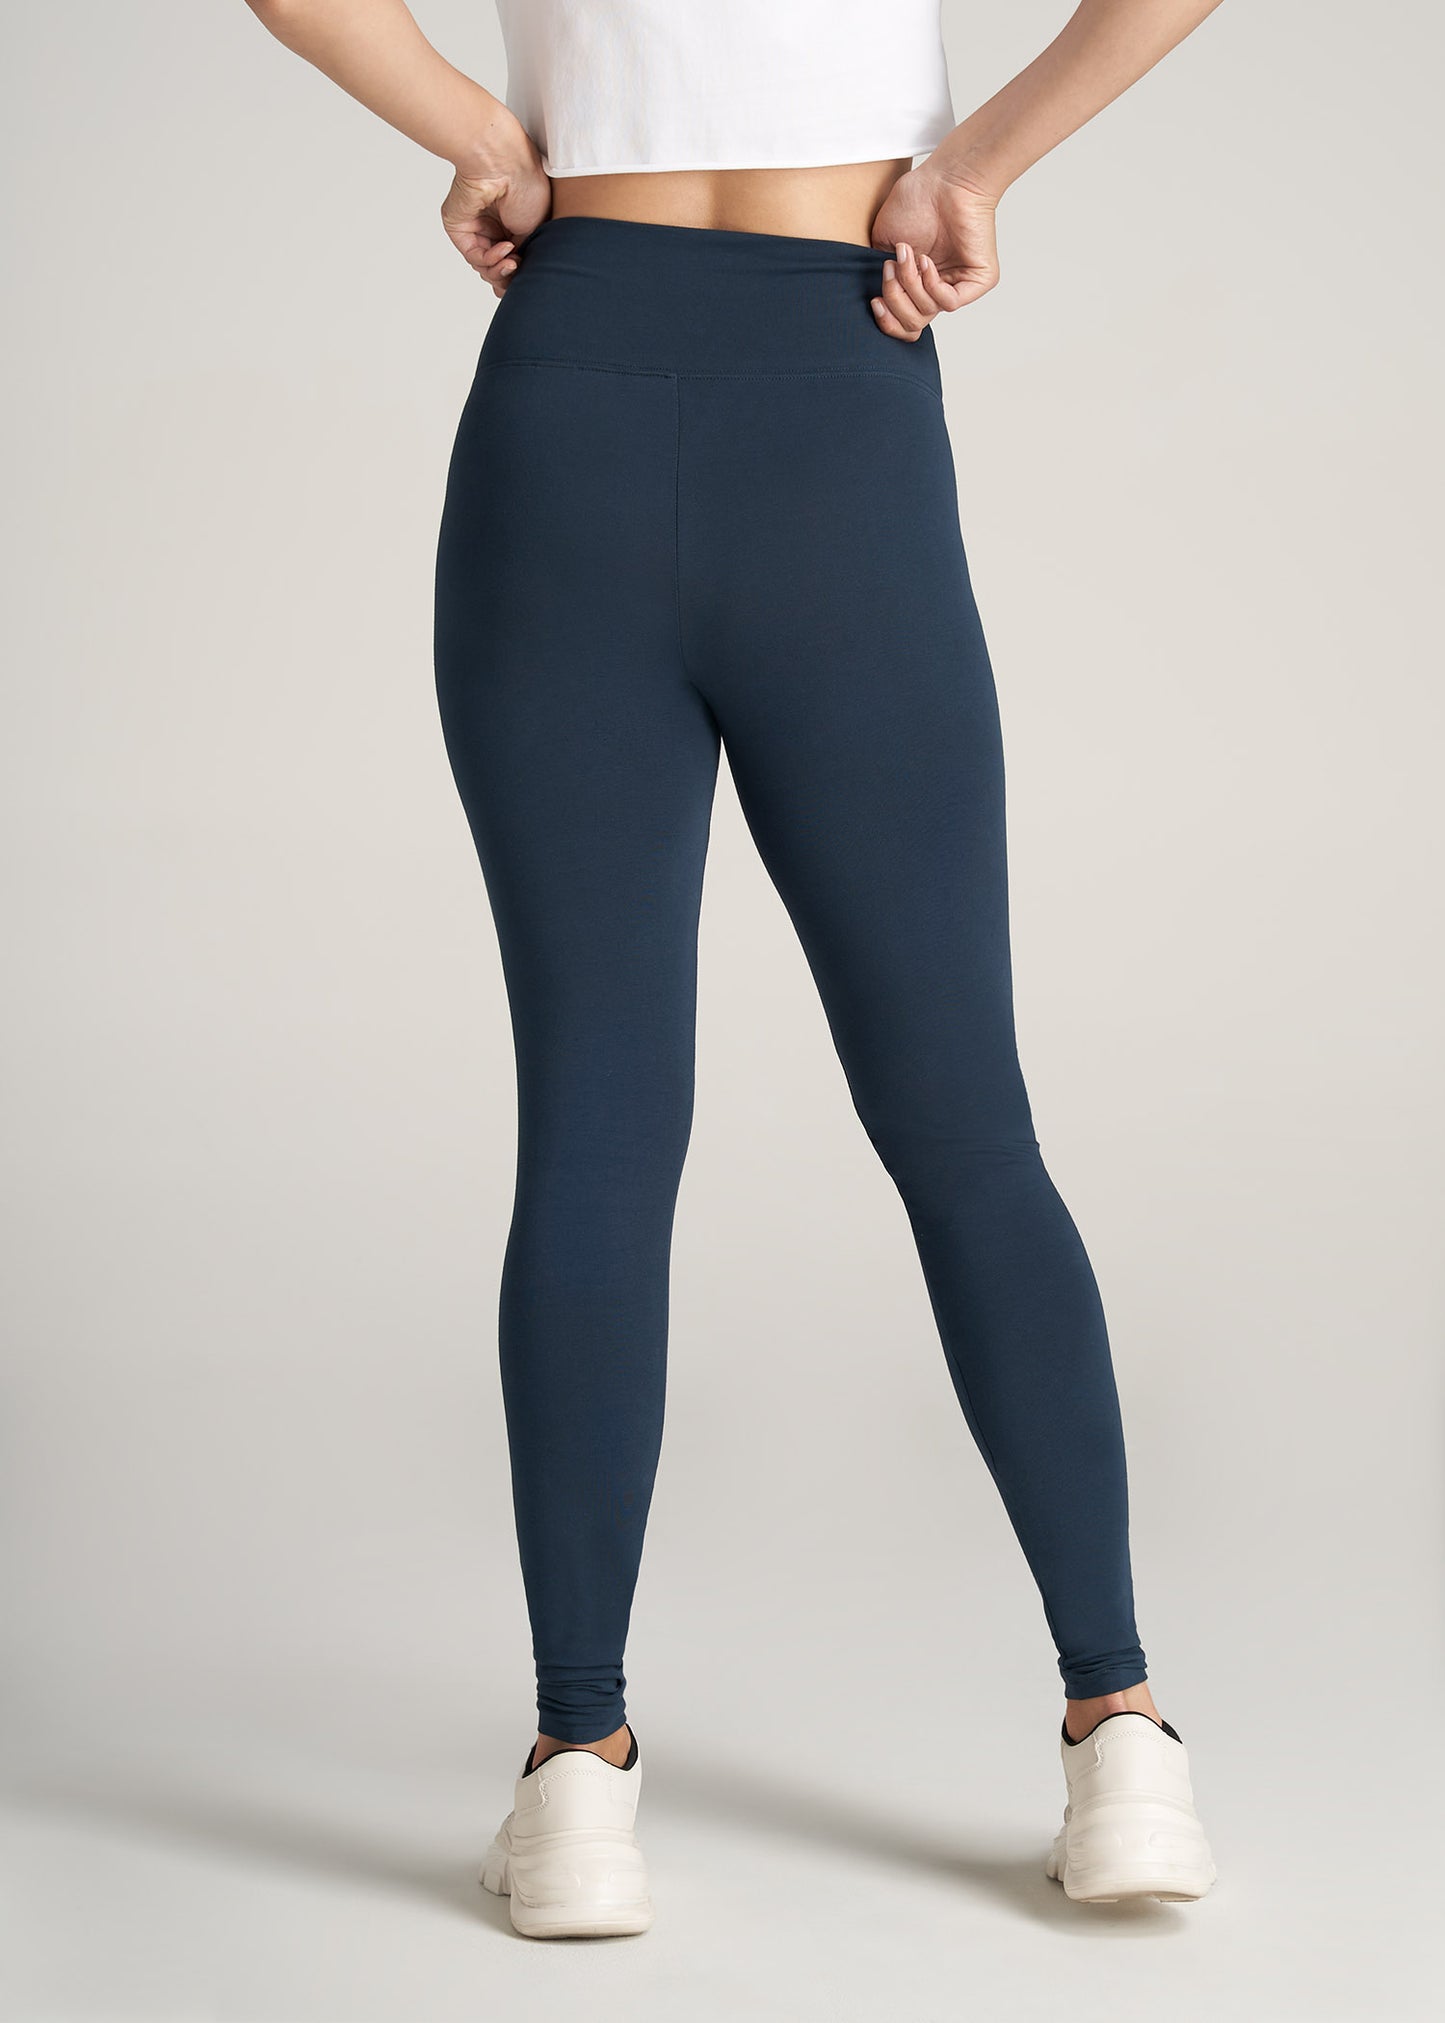 Women's Leggings Tall Blue Plain Sportswear